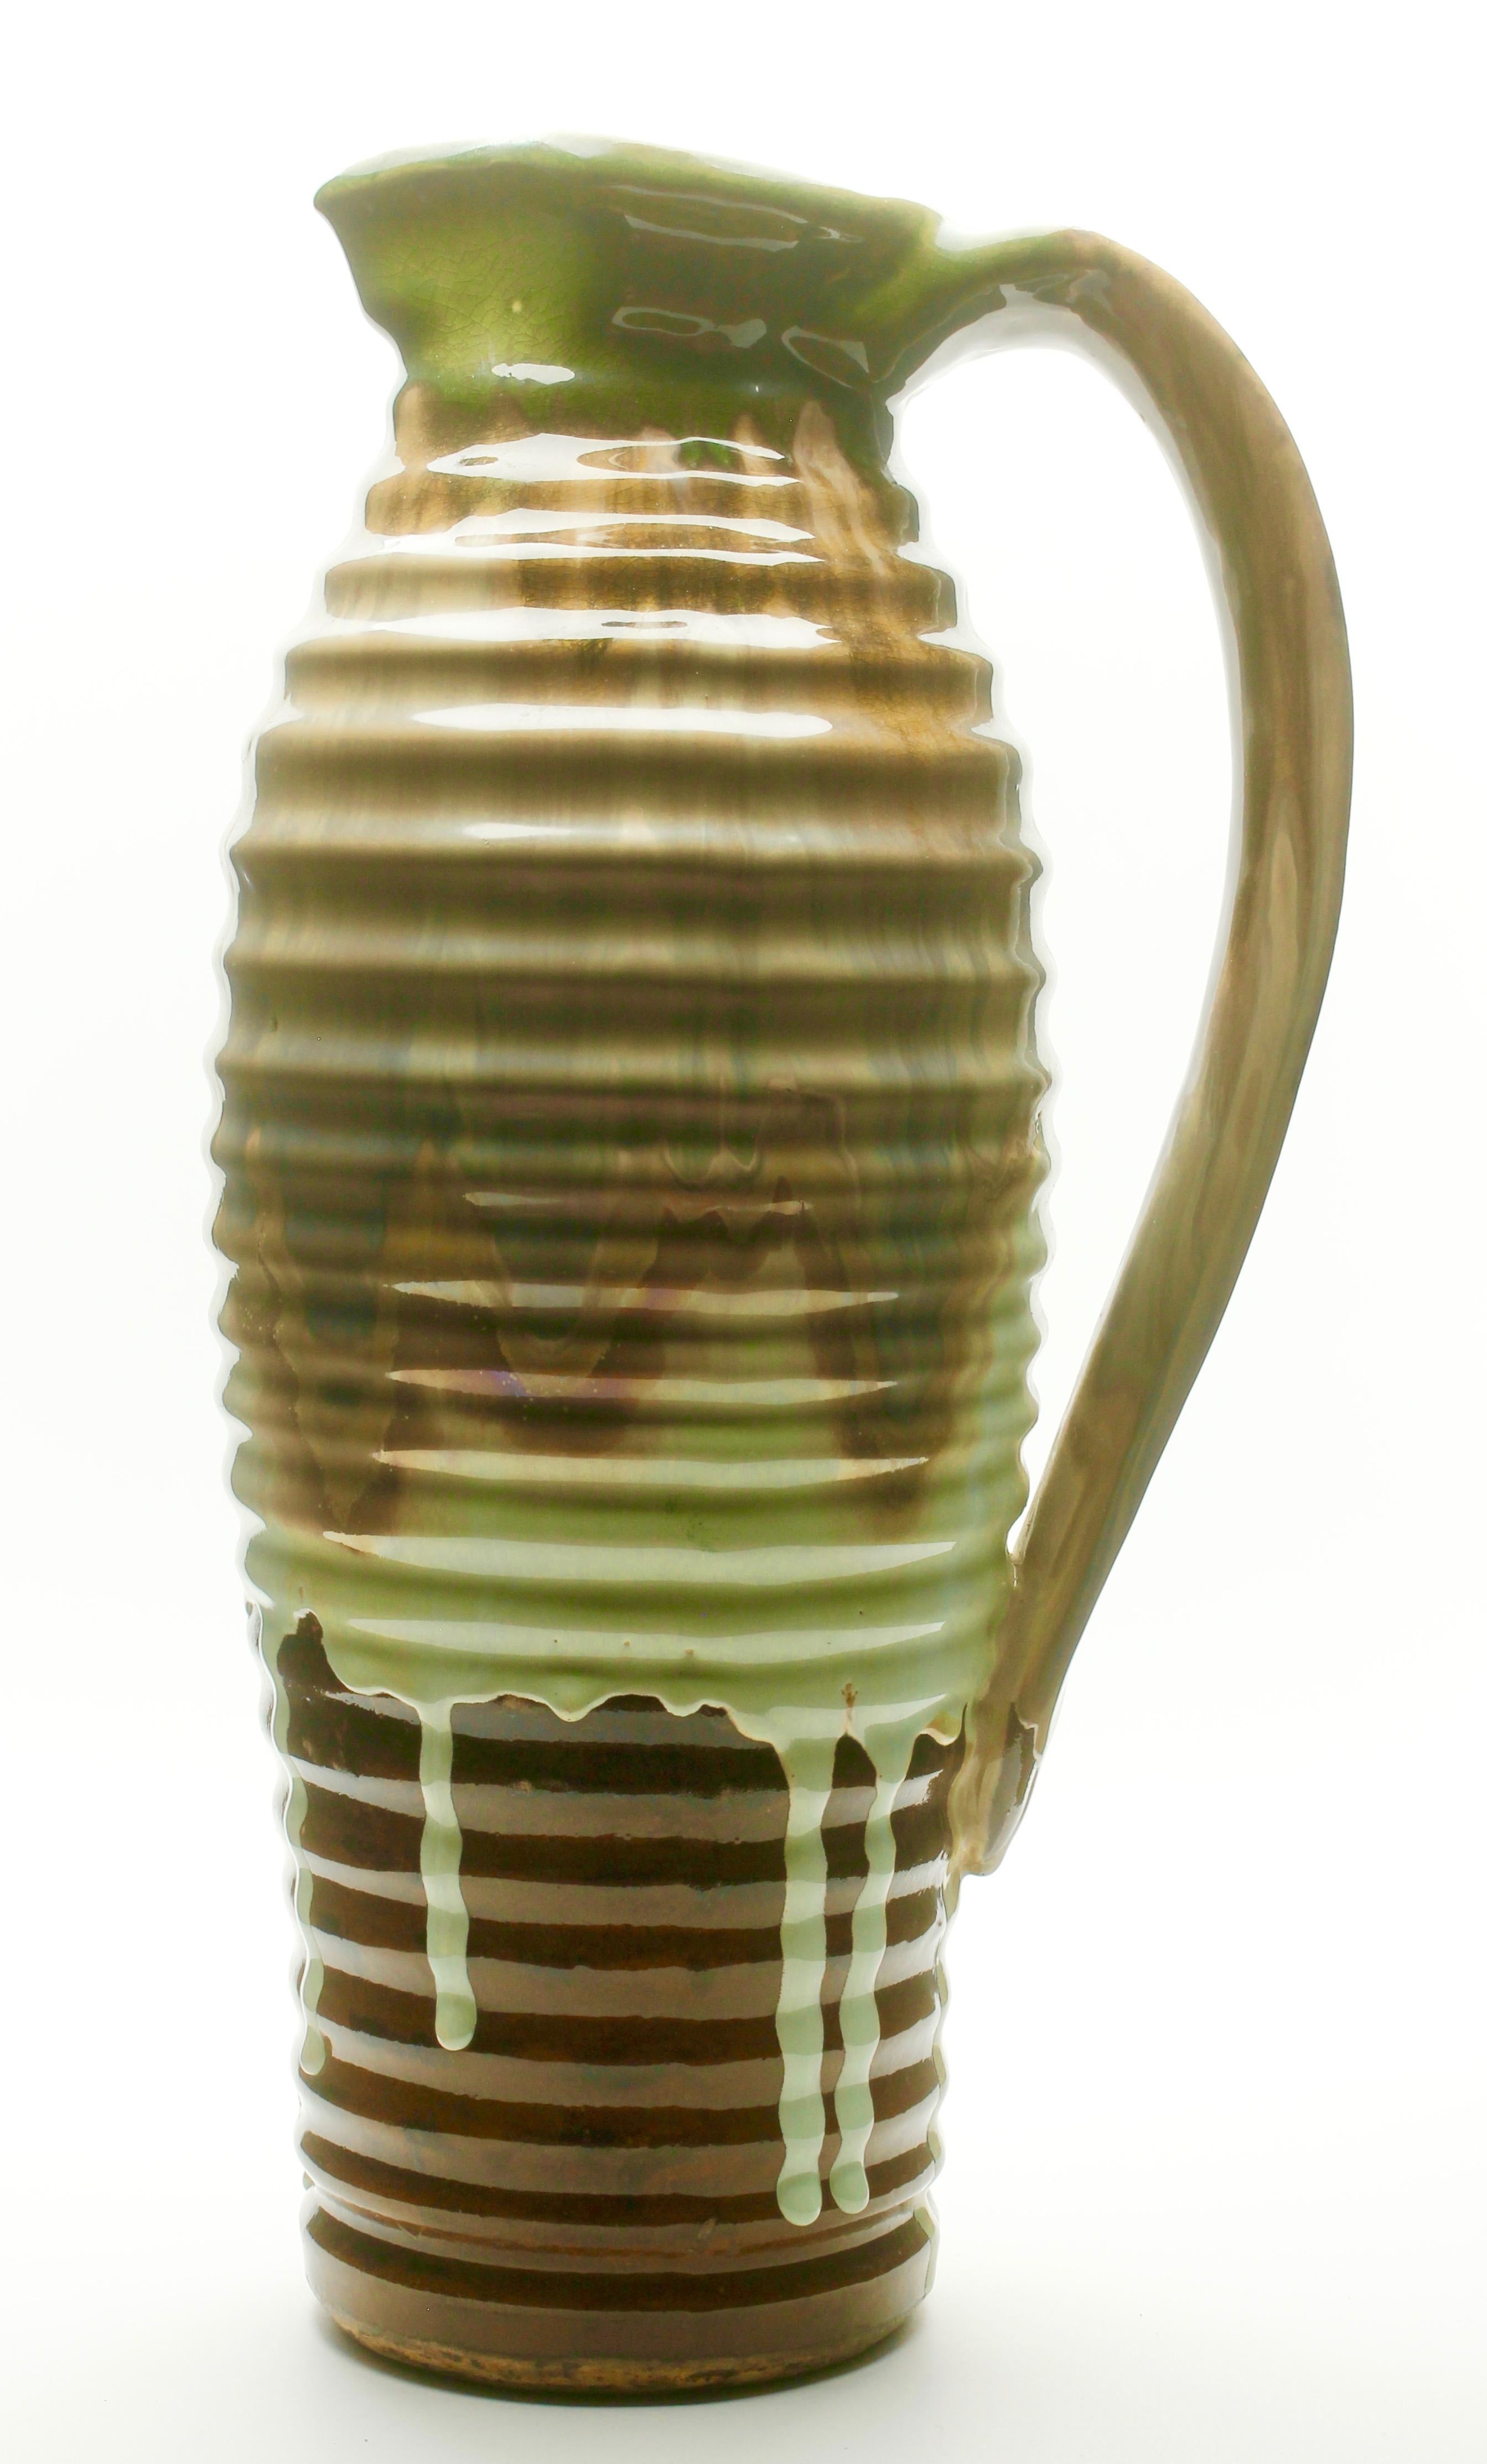 Französische Keramikvase, Krugvase, Frankreich, um 1930
handgefertigtes und glasiertes Steingut mit horizontalen Rippen.
Schöne Glasur in braunen und grünen Farbtönen
Perfekter